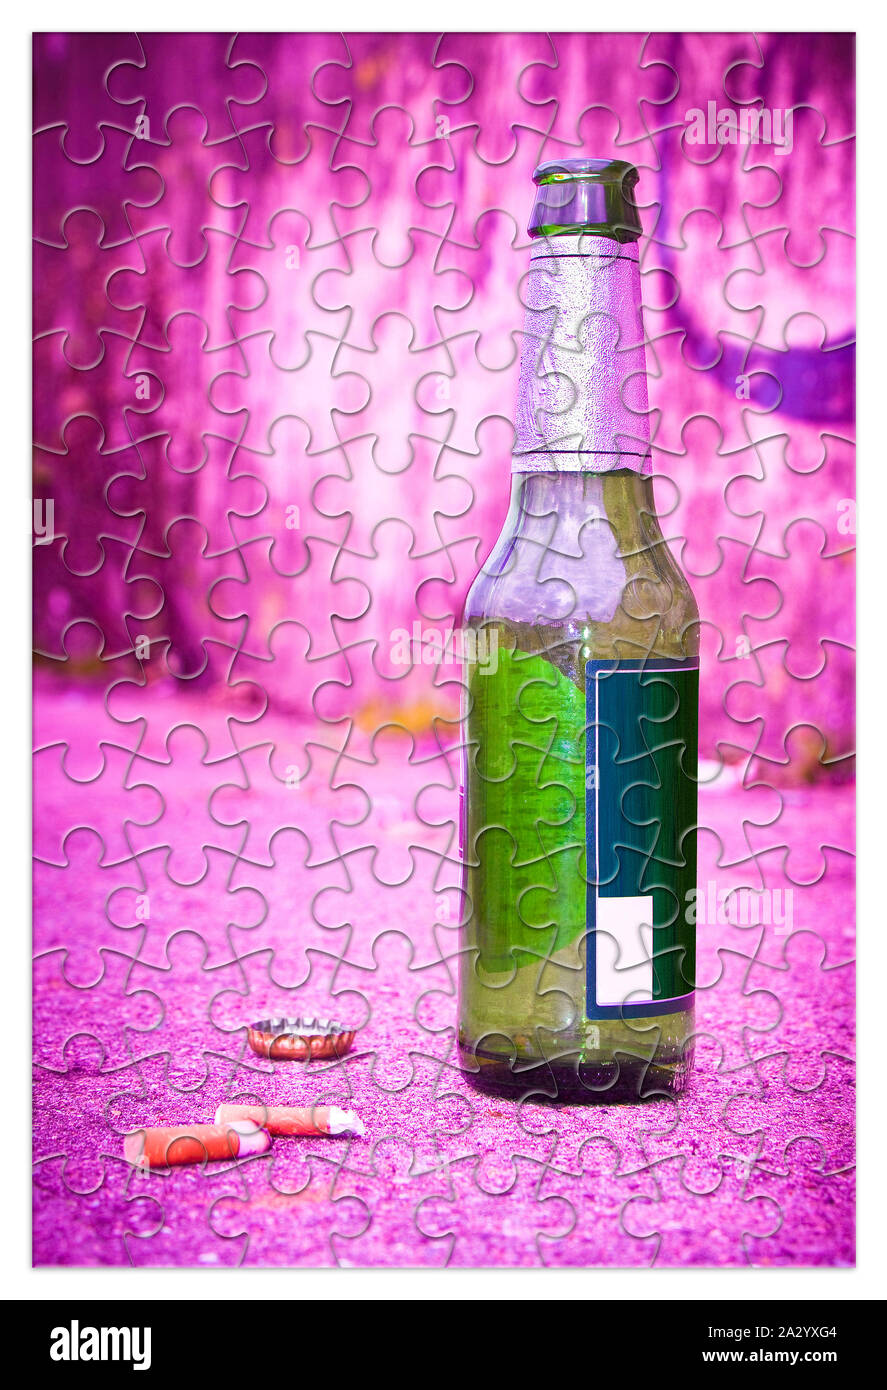 Puzzle der eine Flasche Bier auf dem Boden ruht - befreien sich von  Alkoholabhängigkeit - Konzept Bild Stockfotografie - Alamy